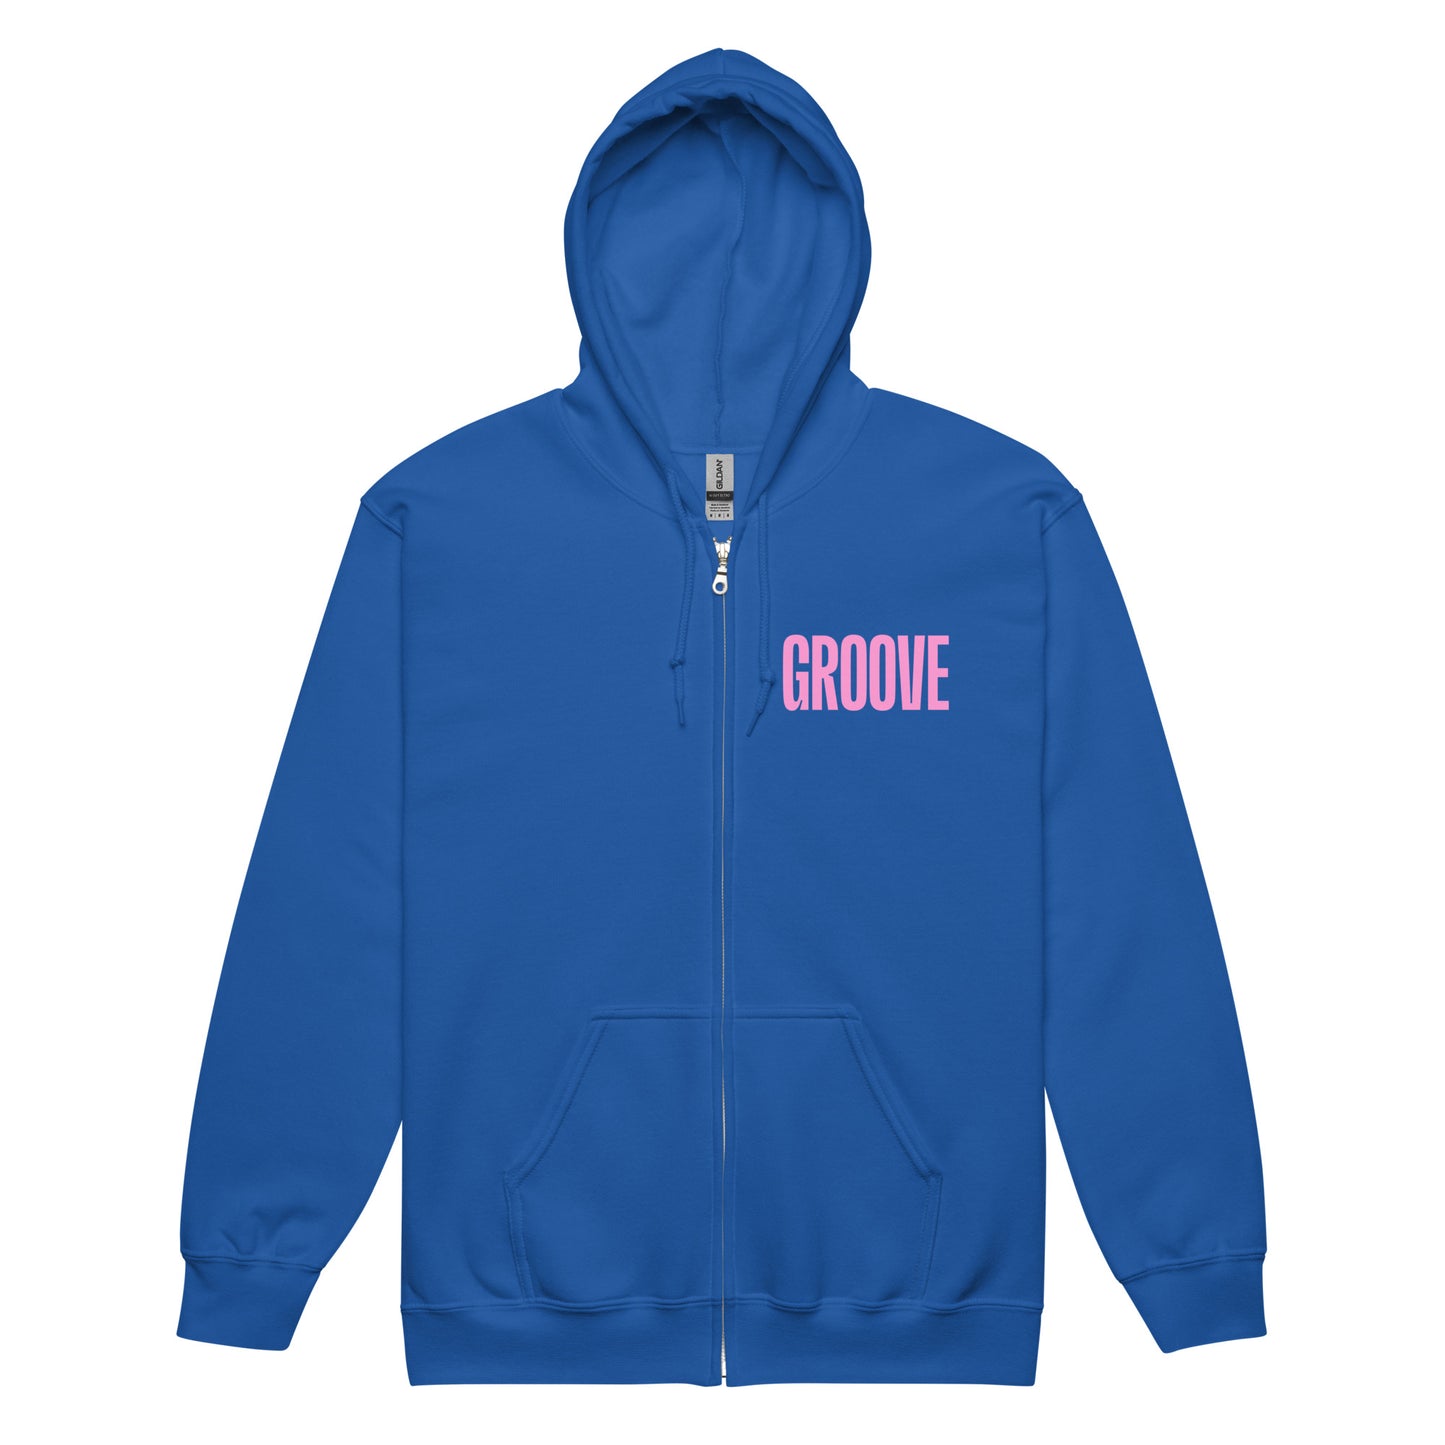 GROOVE - Unisex heavy blend zip hoodie